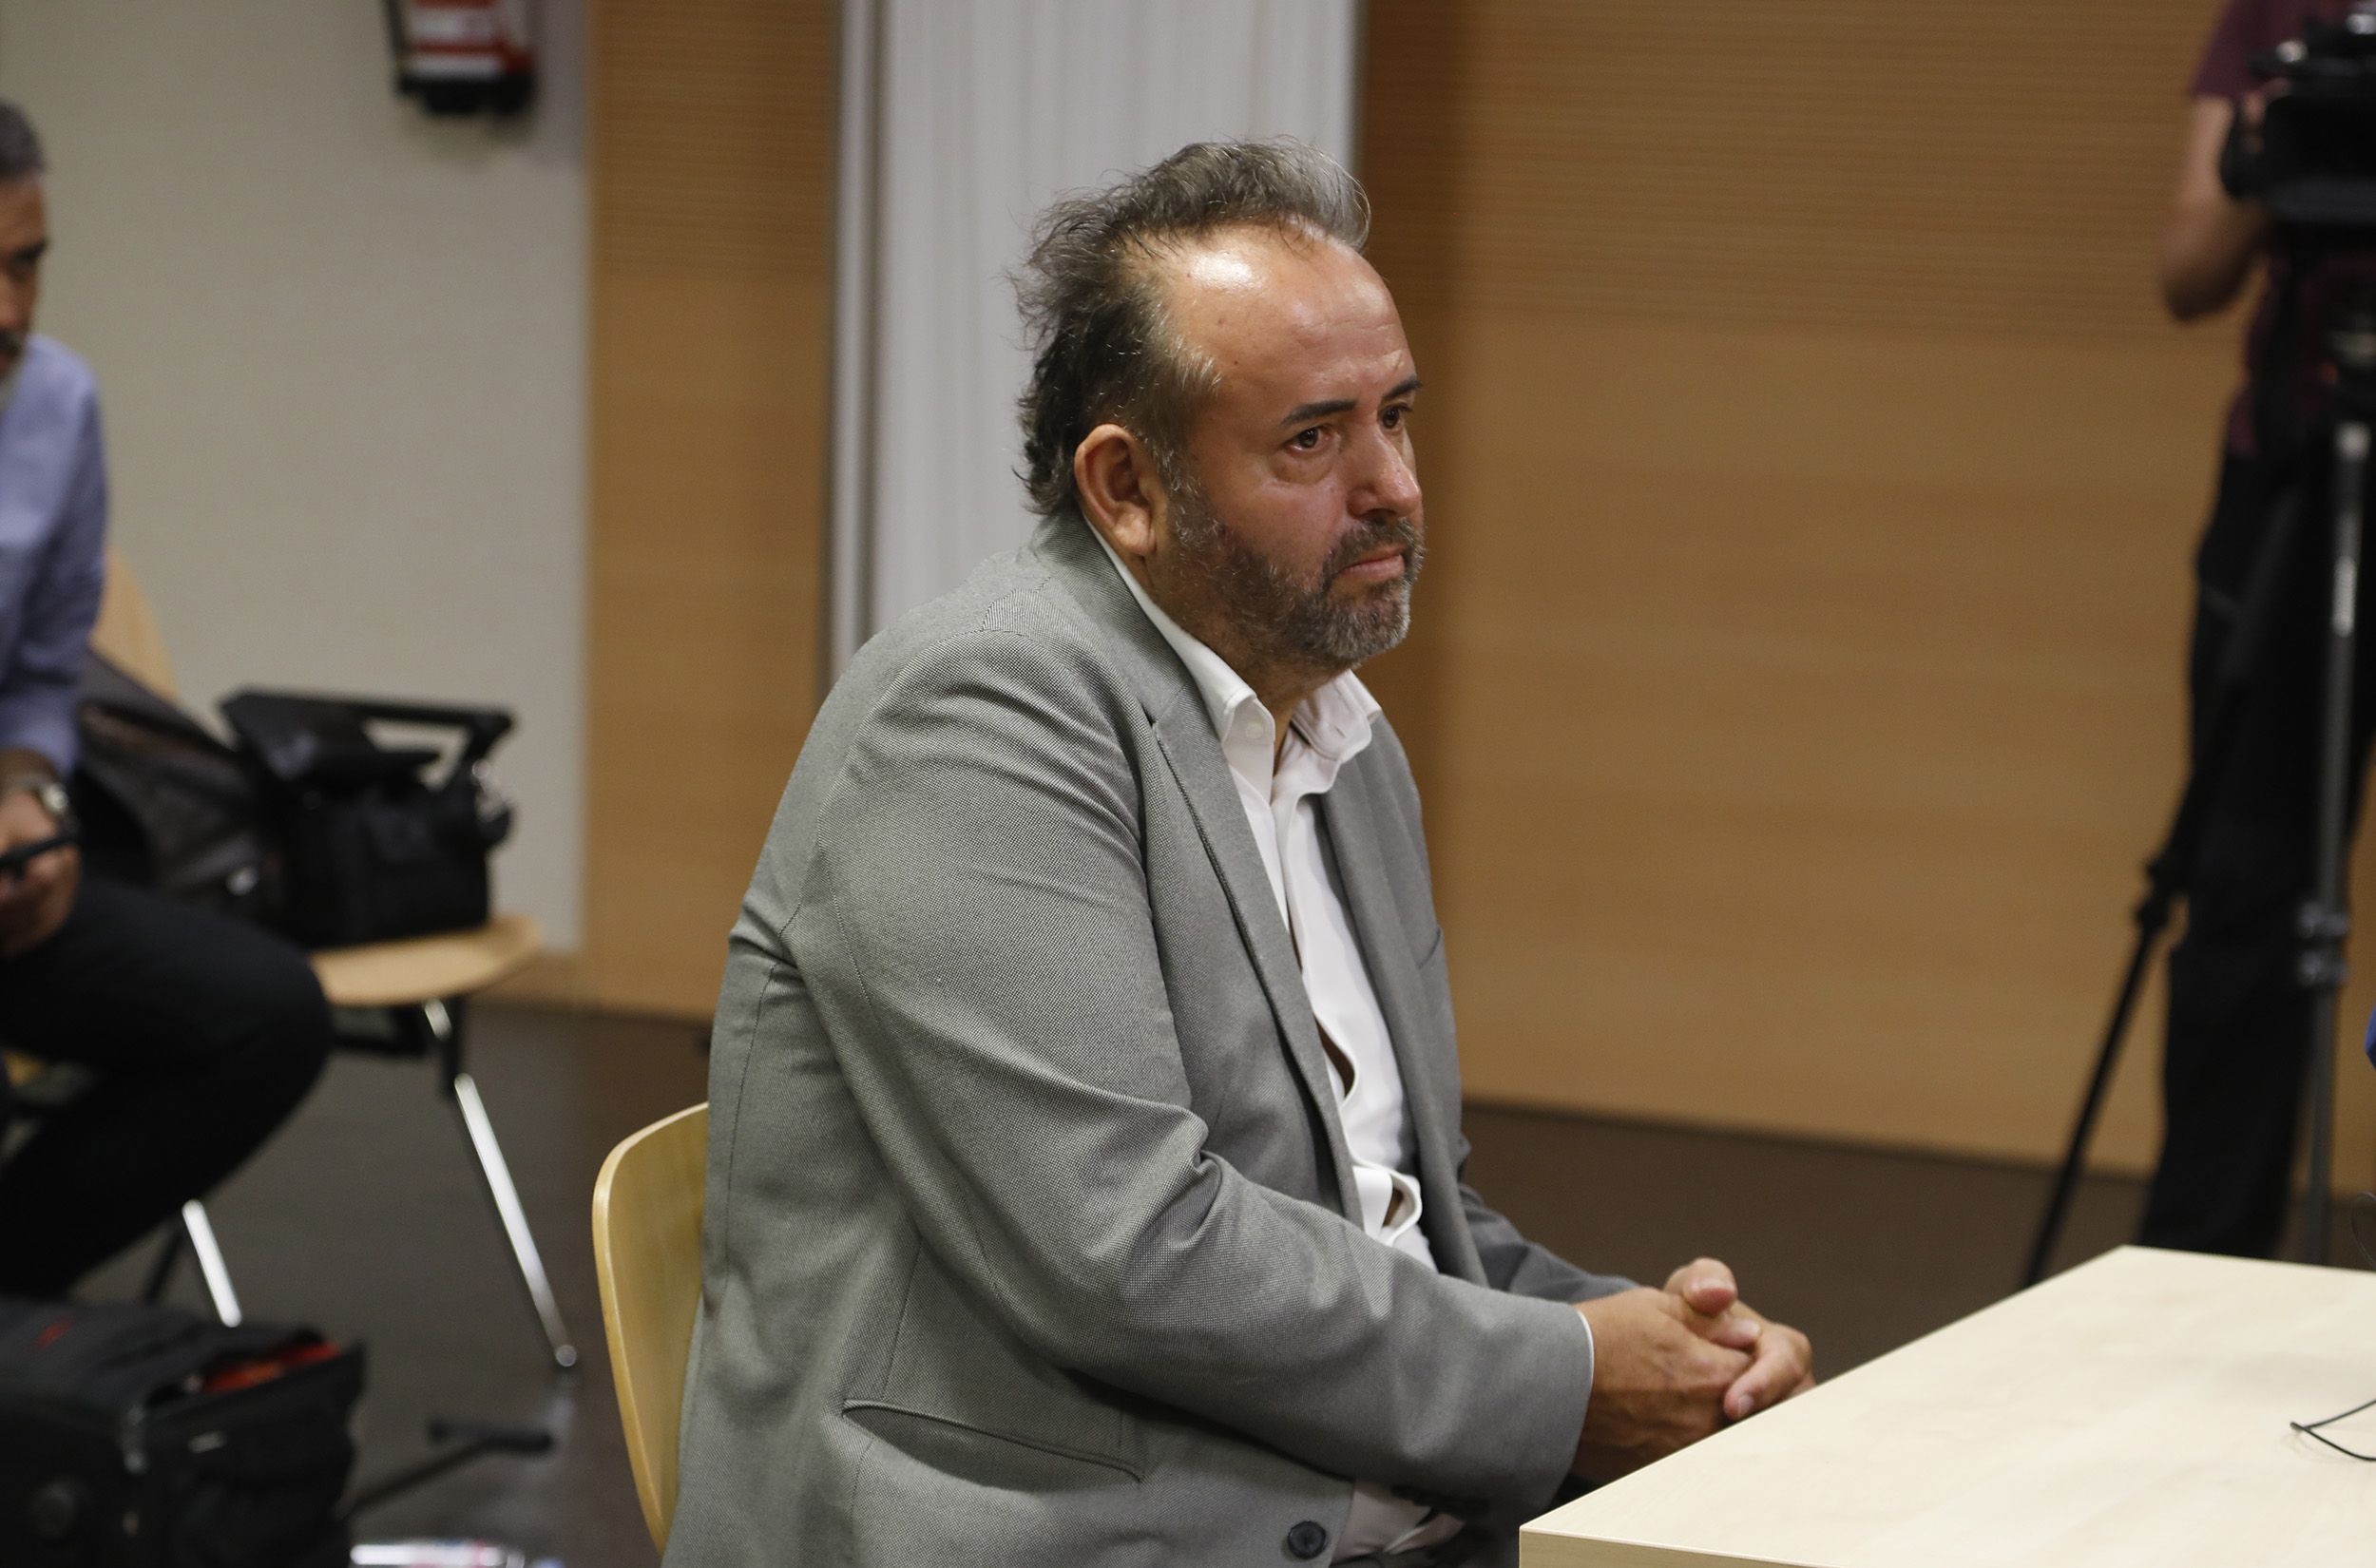 El empresario lanzaroteño Ángel Ramón Tejera, alias 'Mon', en el Juzgado de Arrecife. Foto: José Luis Carrasco.